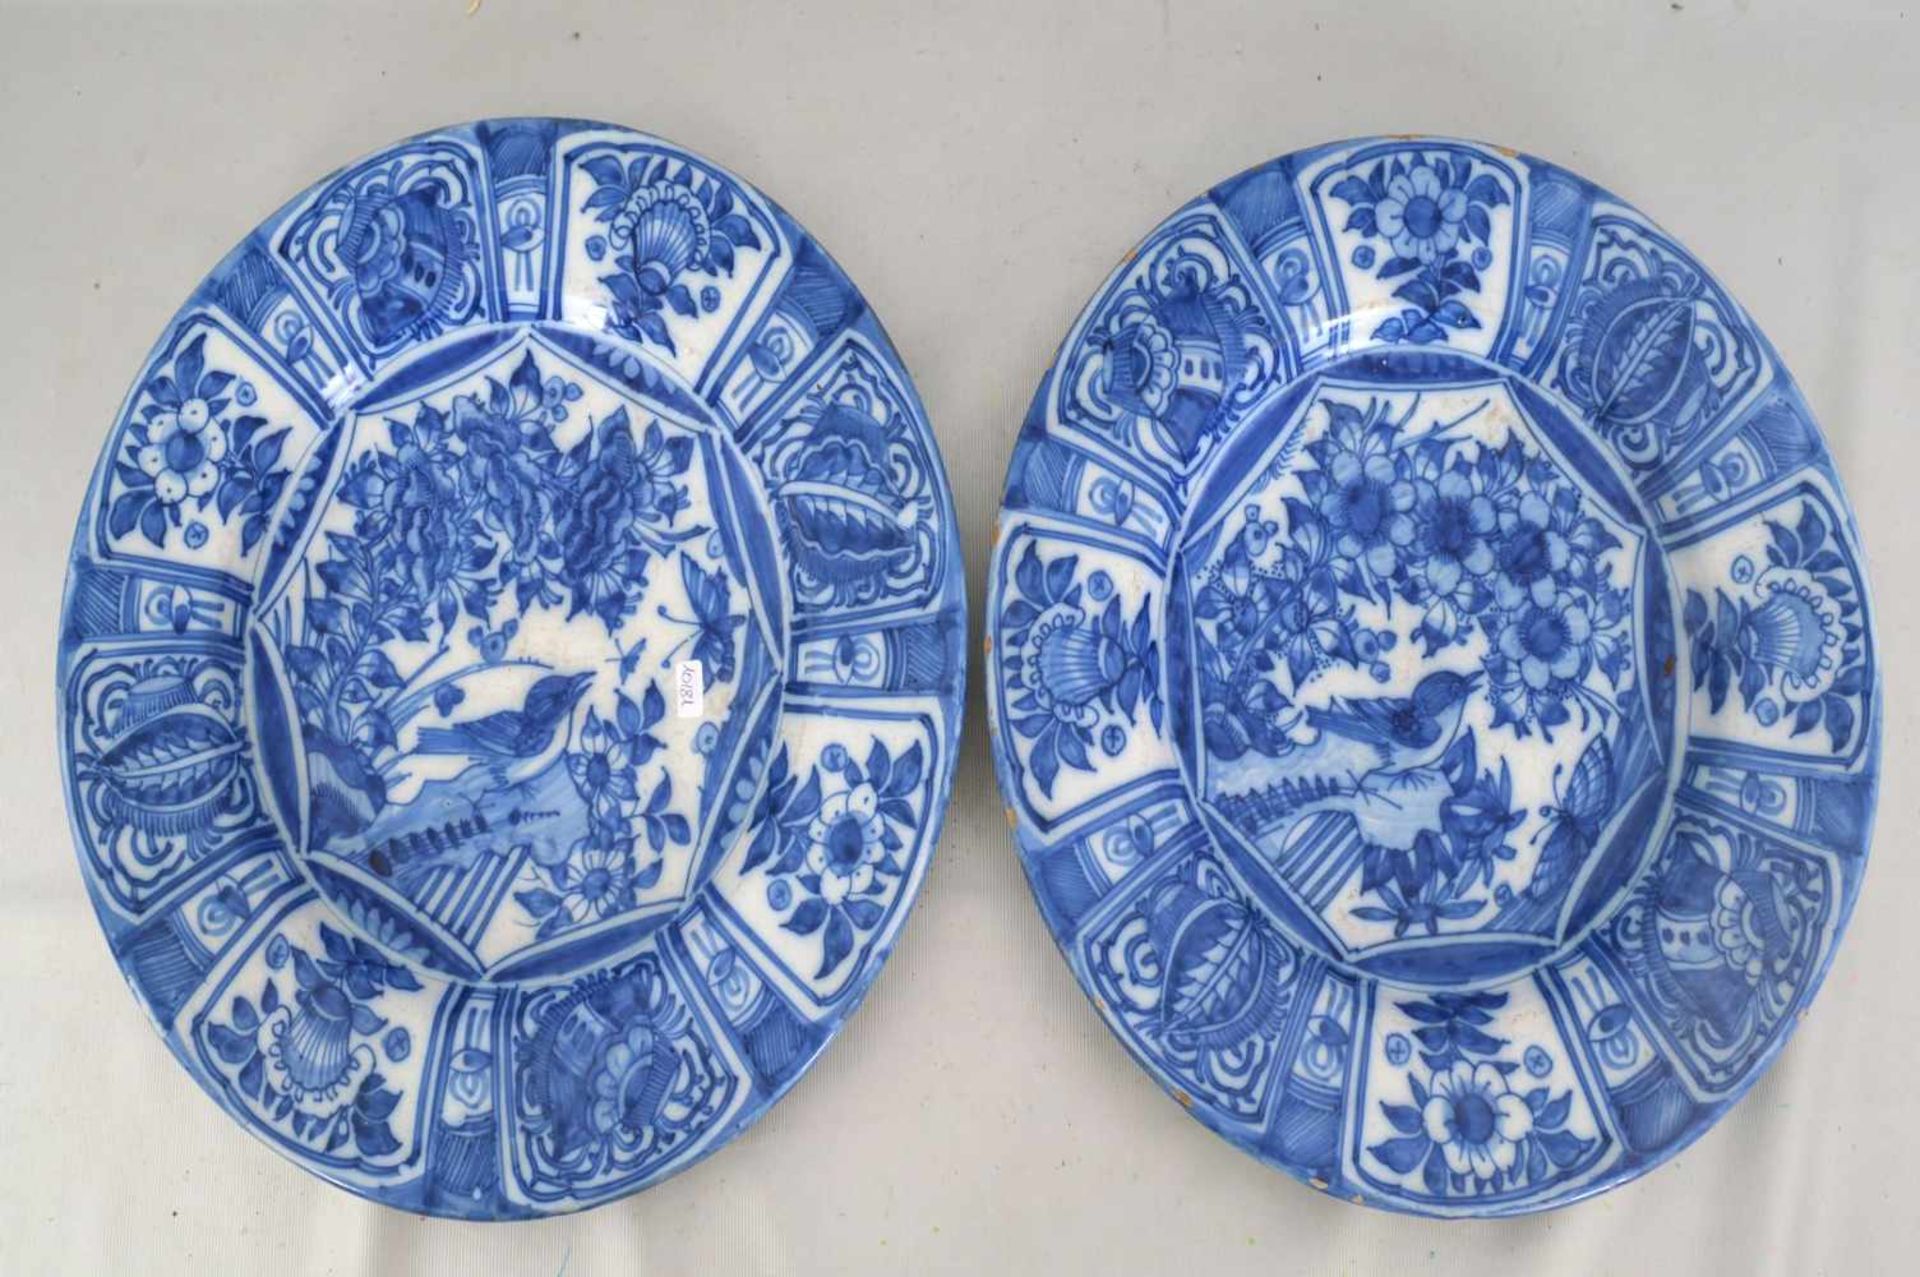 Zwei Teller Porzellan, beige glasiert, Rand und Spiegel blau bemalt, mit Blumenranken, Blüten und